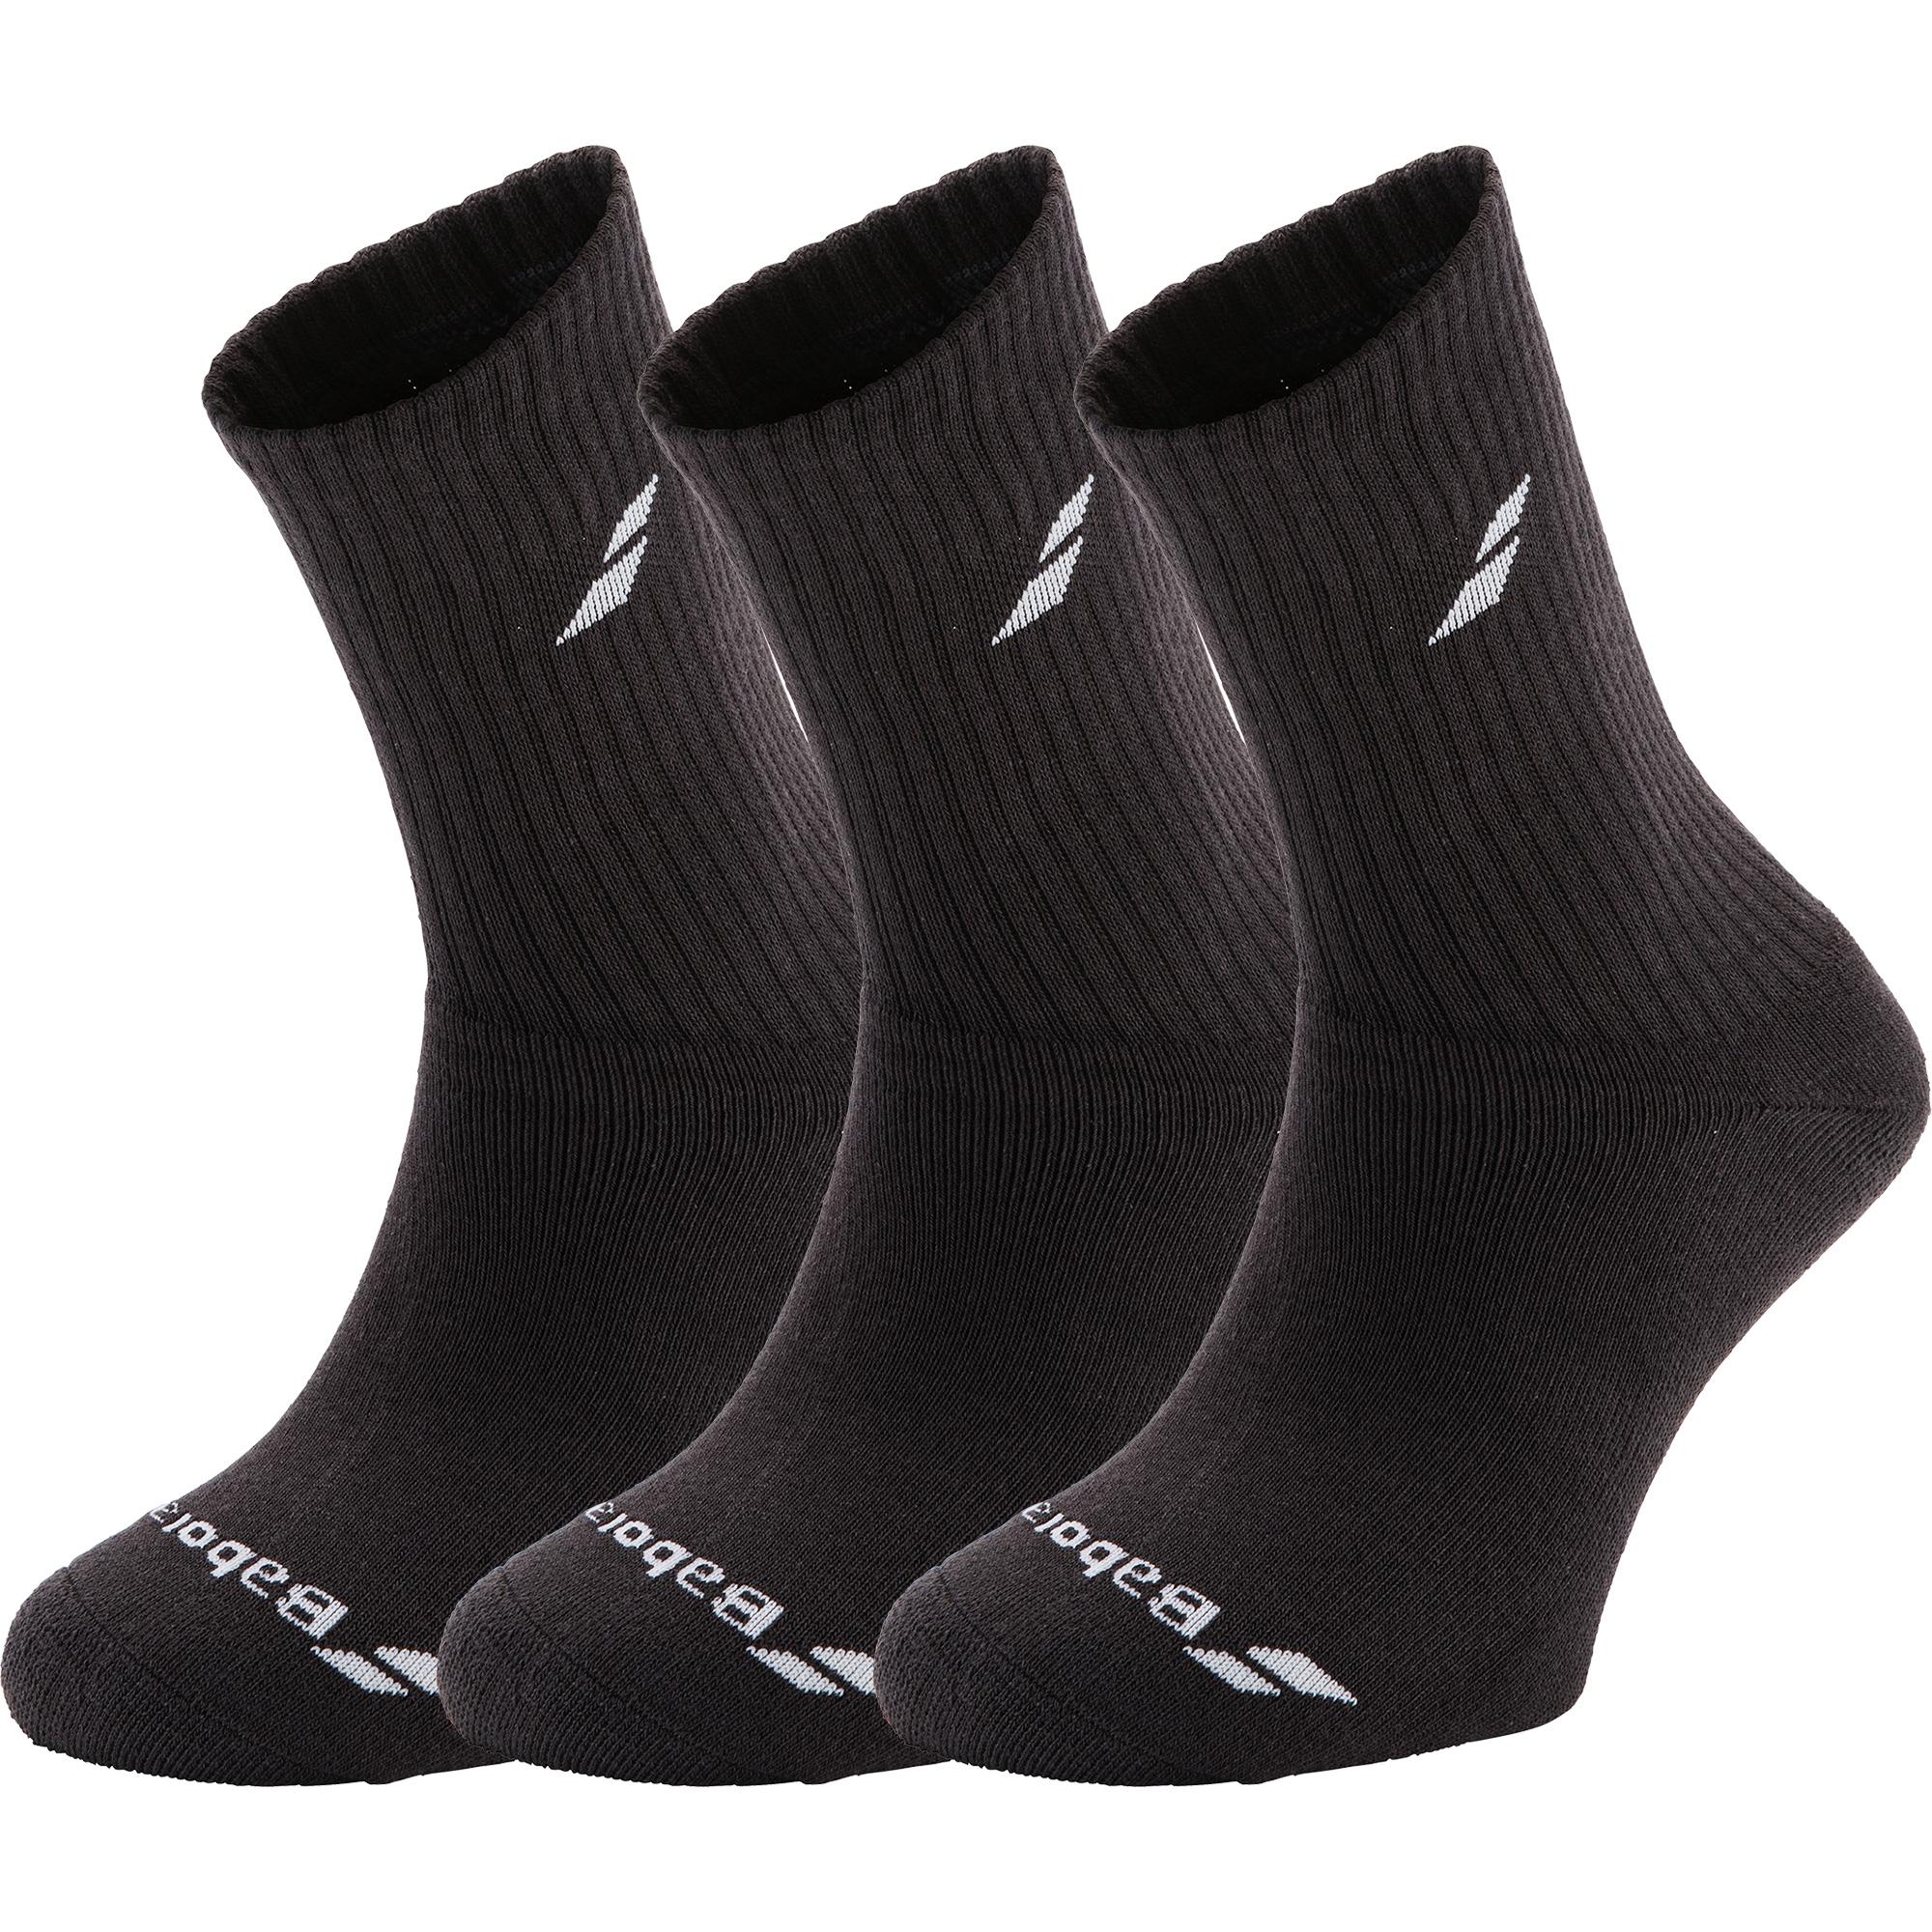 Babolat Sports Socks (3 Pairs) - Black - Tennisnuts.com